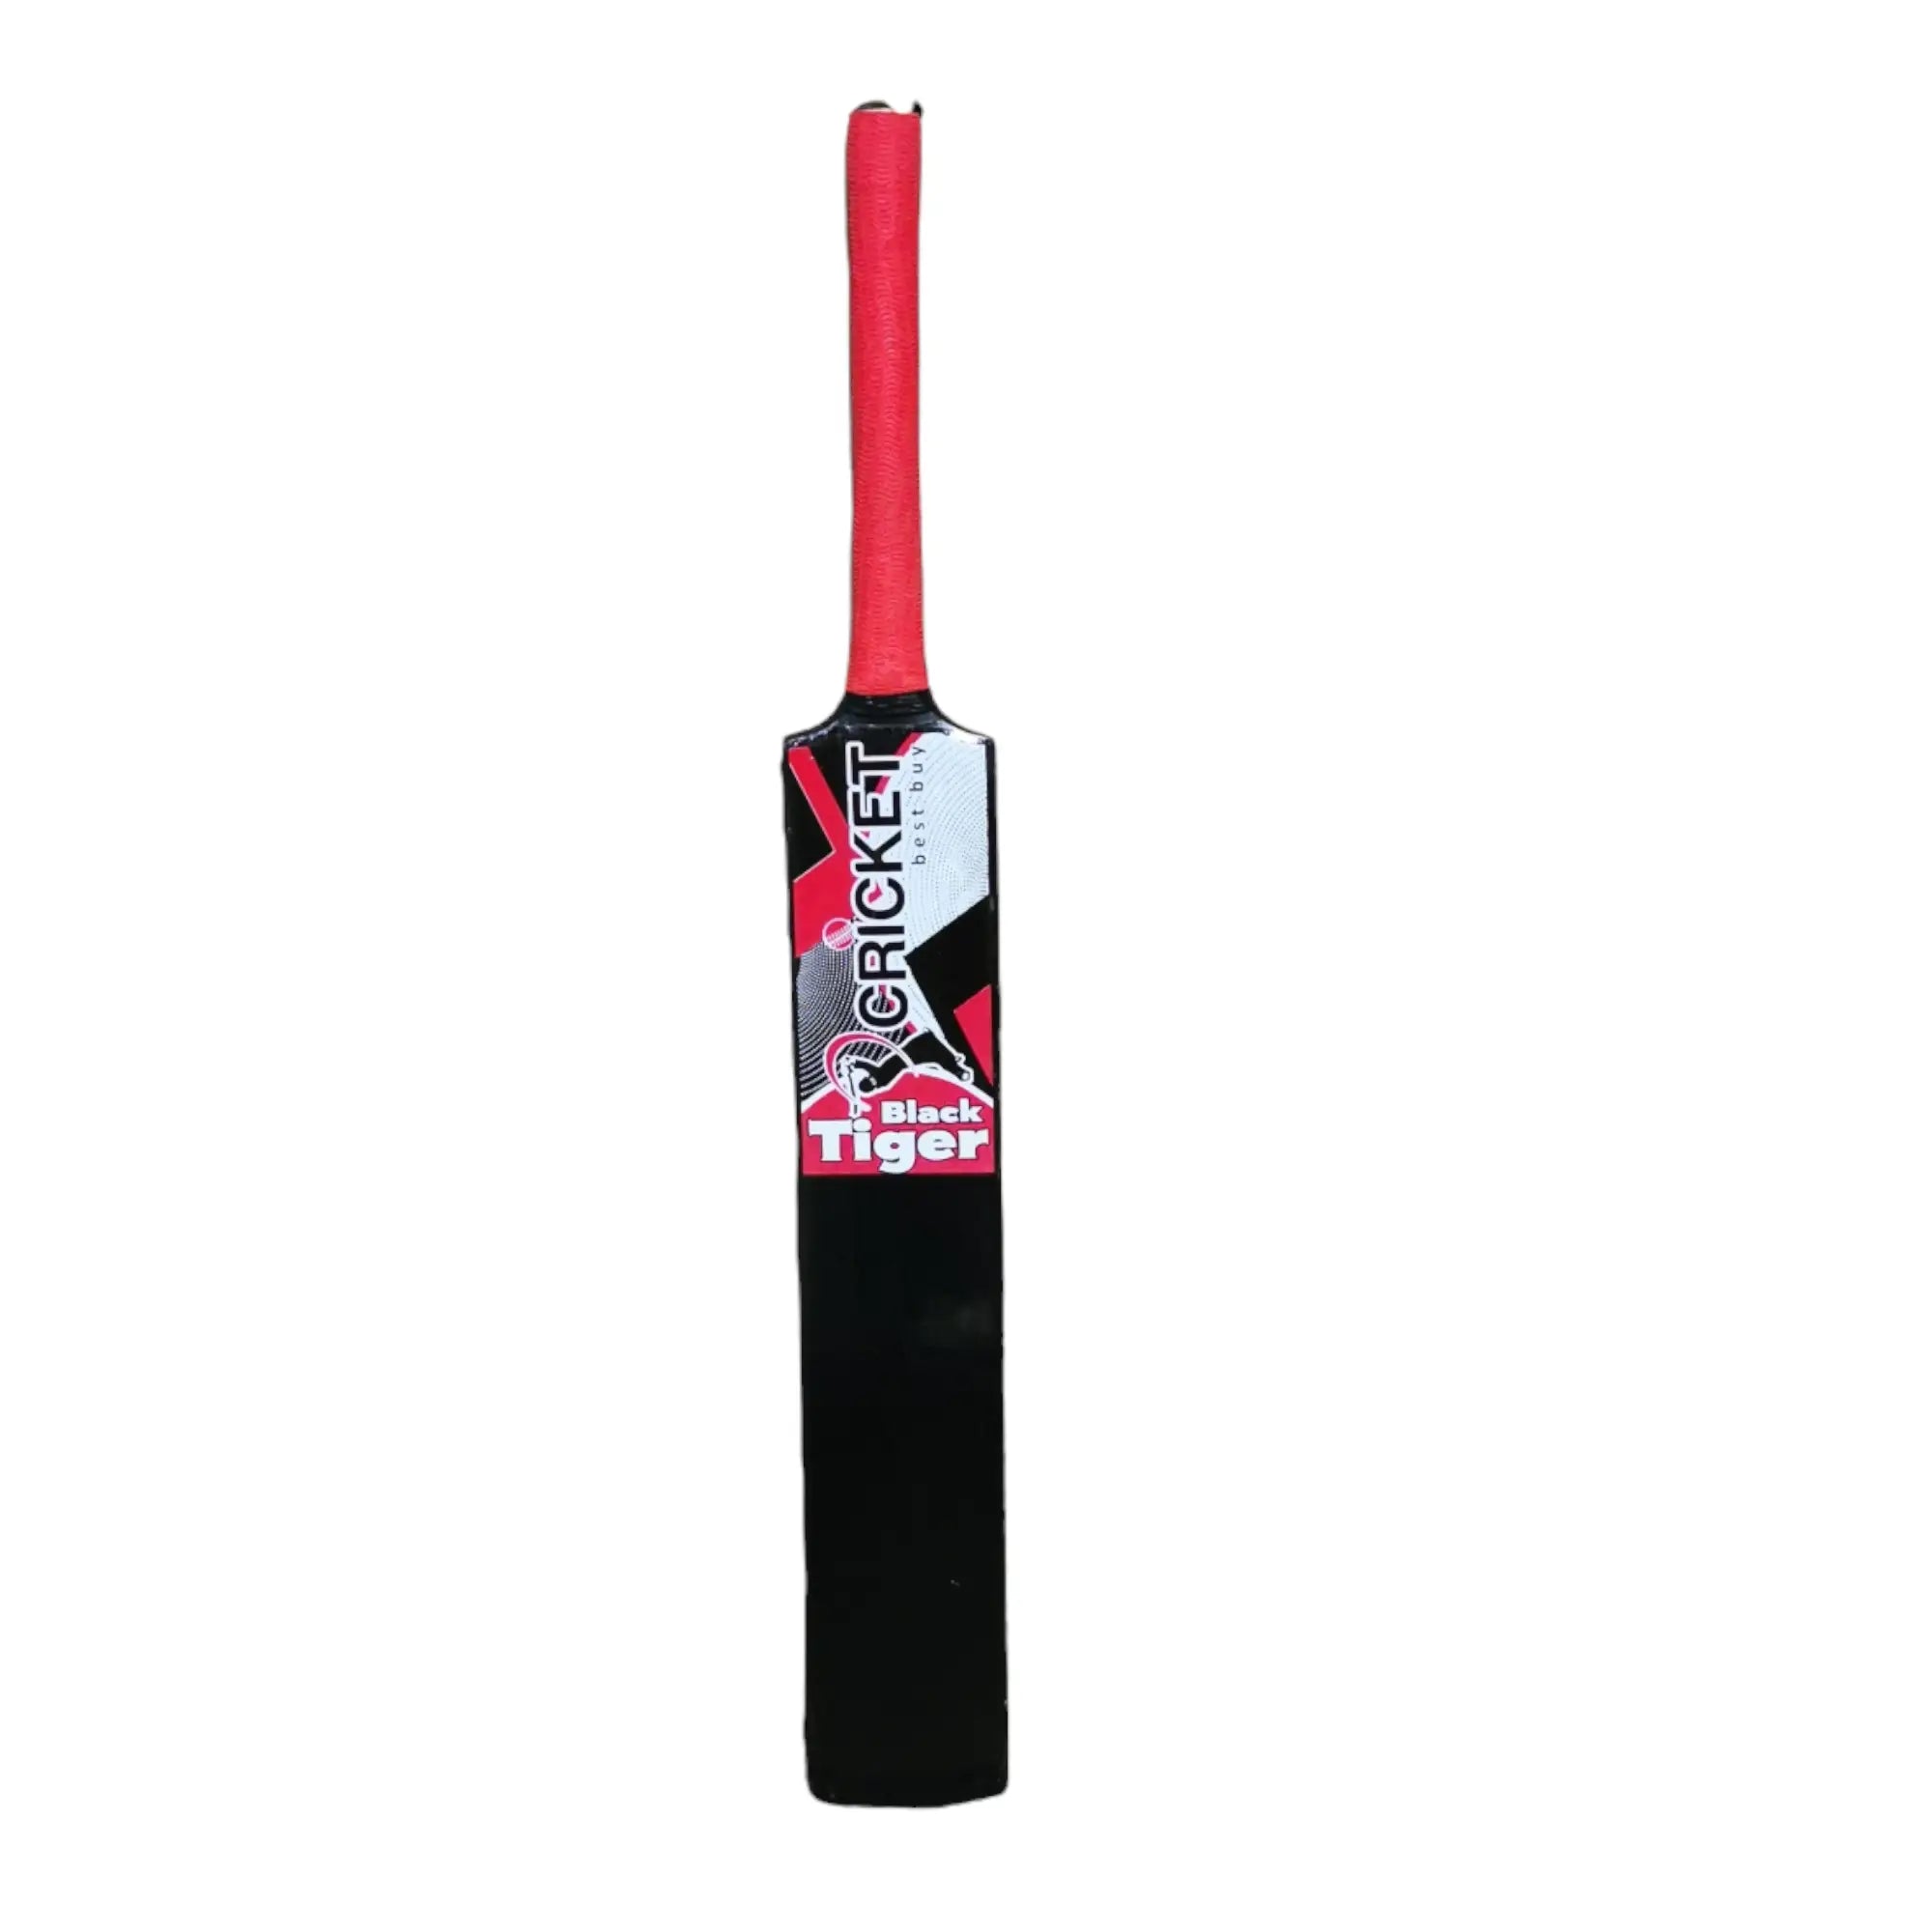 CBB Black Tiger Cricket Bat For Tape Tennis Softball Lightweight Men - BATS - SOFTBALL